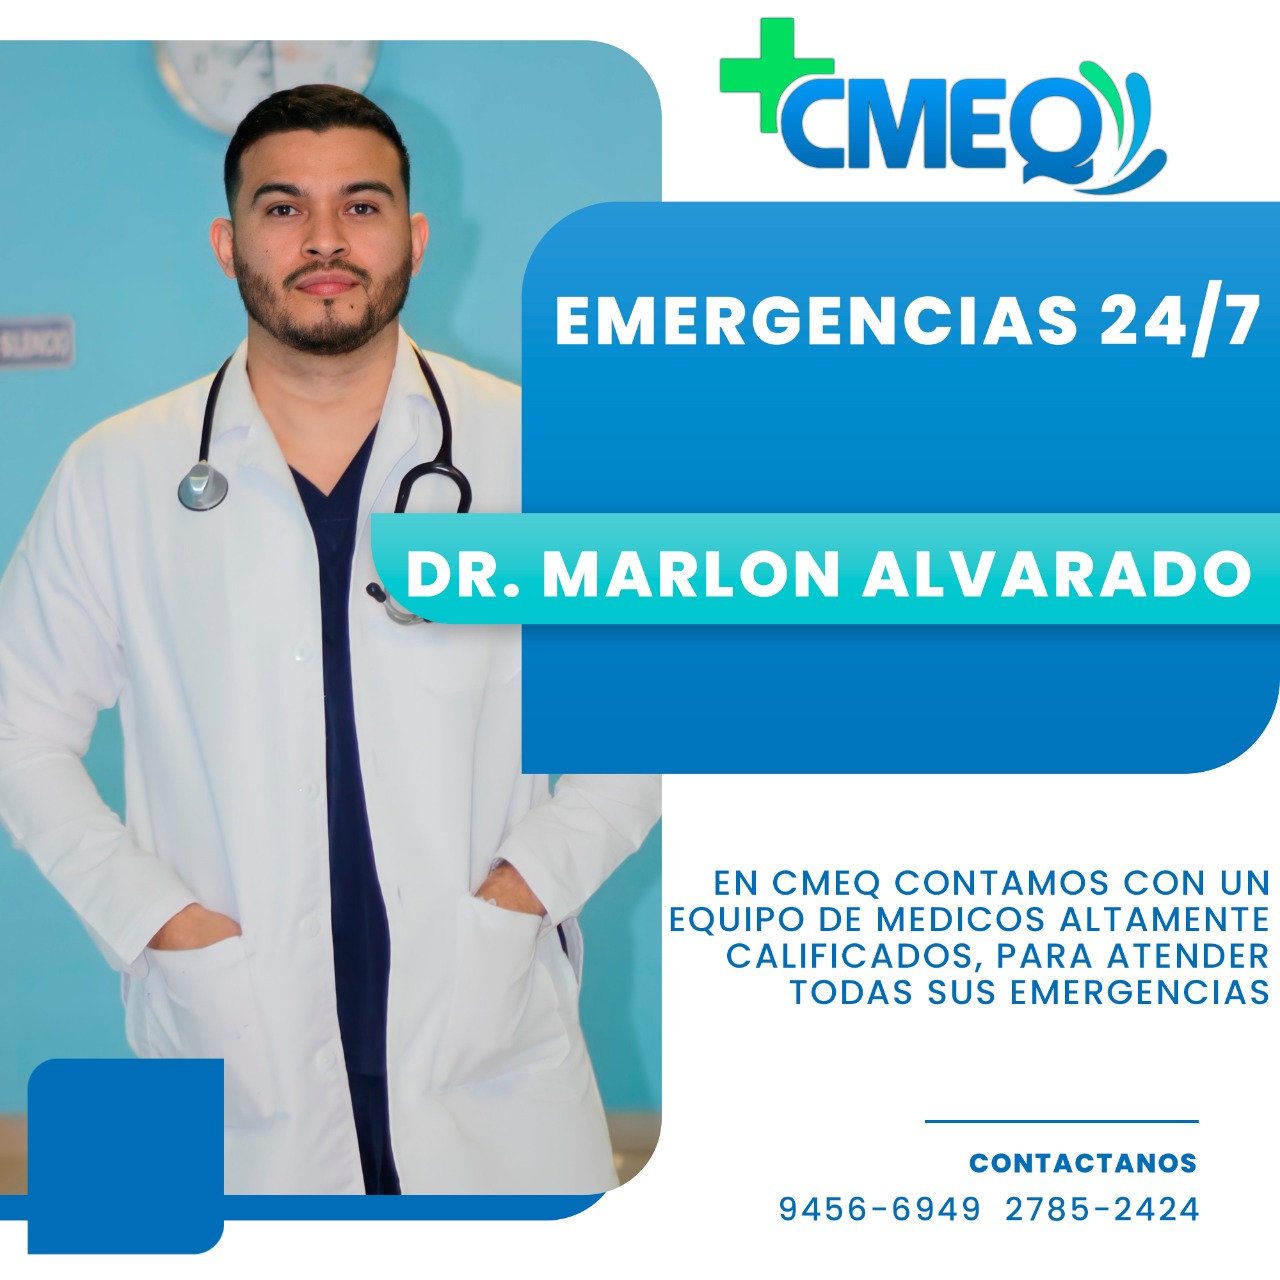 Dr. Marlon Alvarado